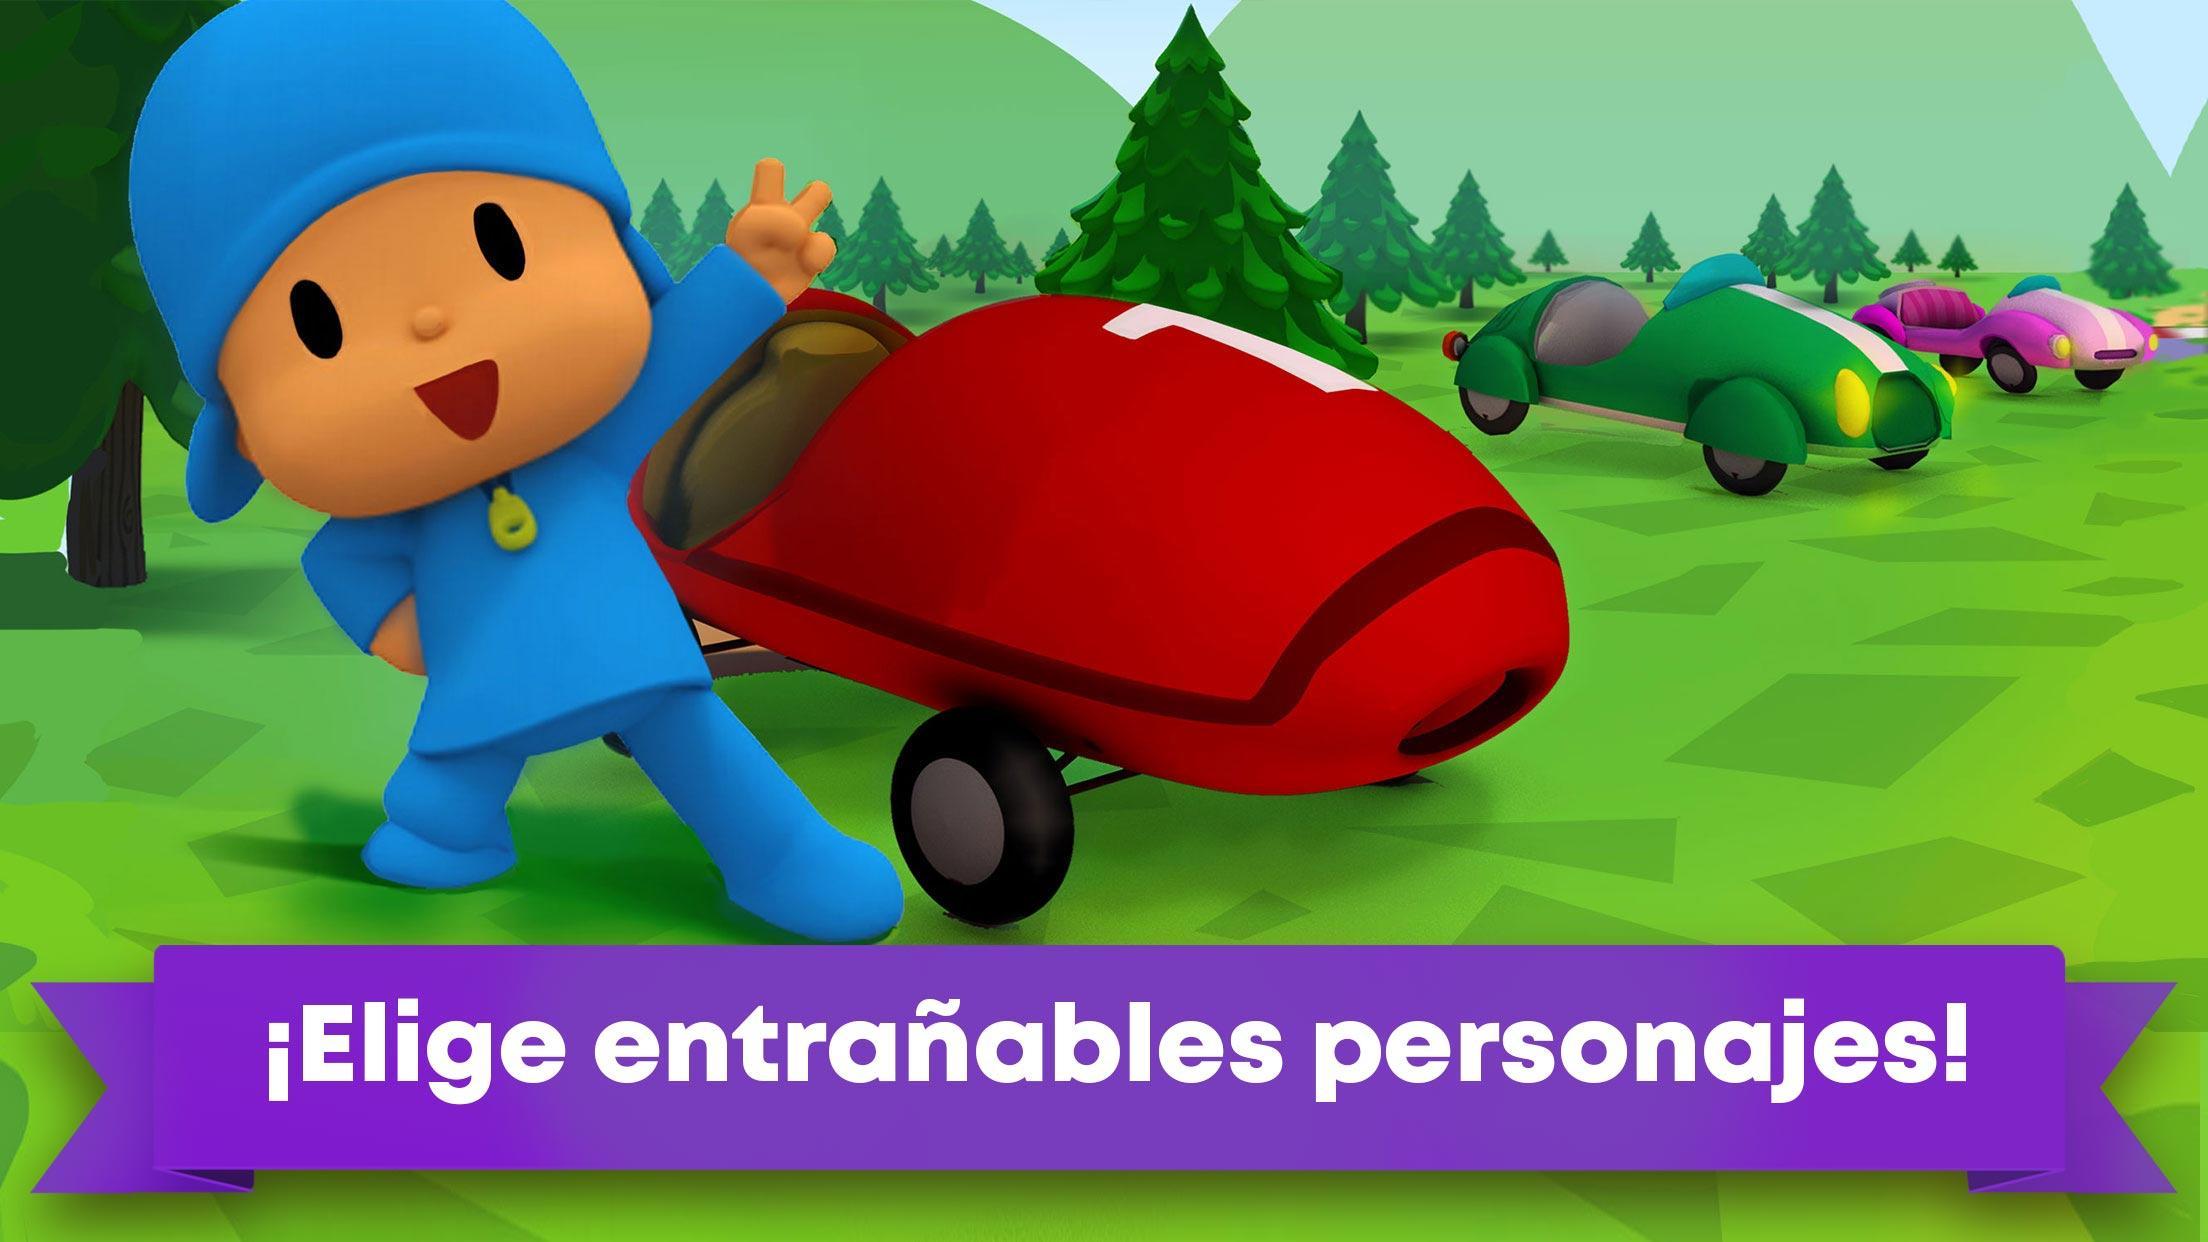 Pocoyo Racing - Carrera de Coches para Niños for Android - APK Download